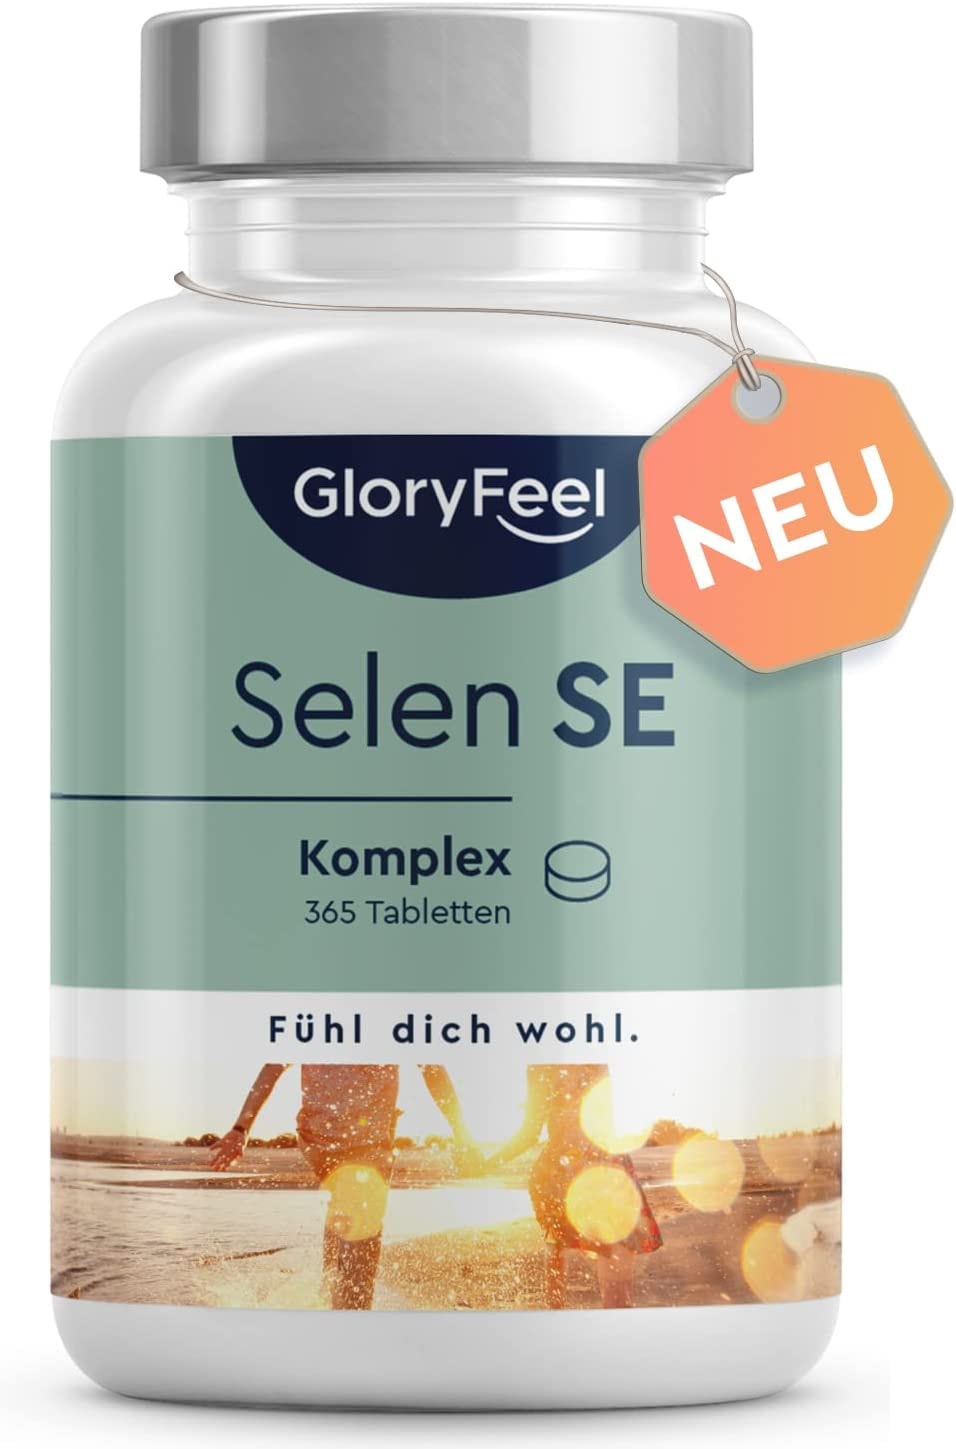 GloryFeel Selen 365 Tabletten Premium Komplex aus Natriumselenit & Selenmethionin - Immun- und Schilddrüsen-Support* - Laborgeprüft, 100% vegan und ohne Zusätze in Deutschland hergestellt